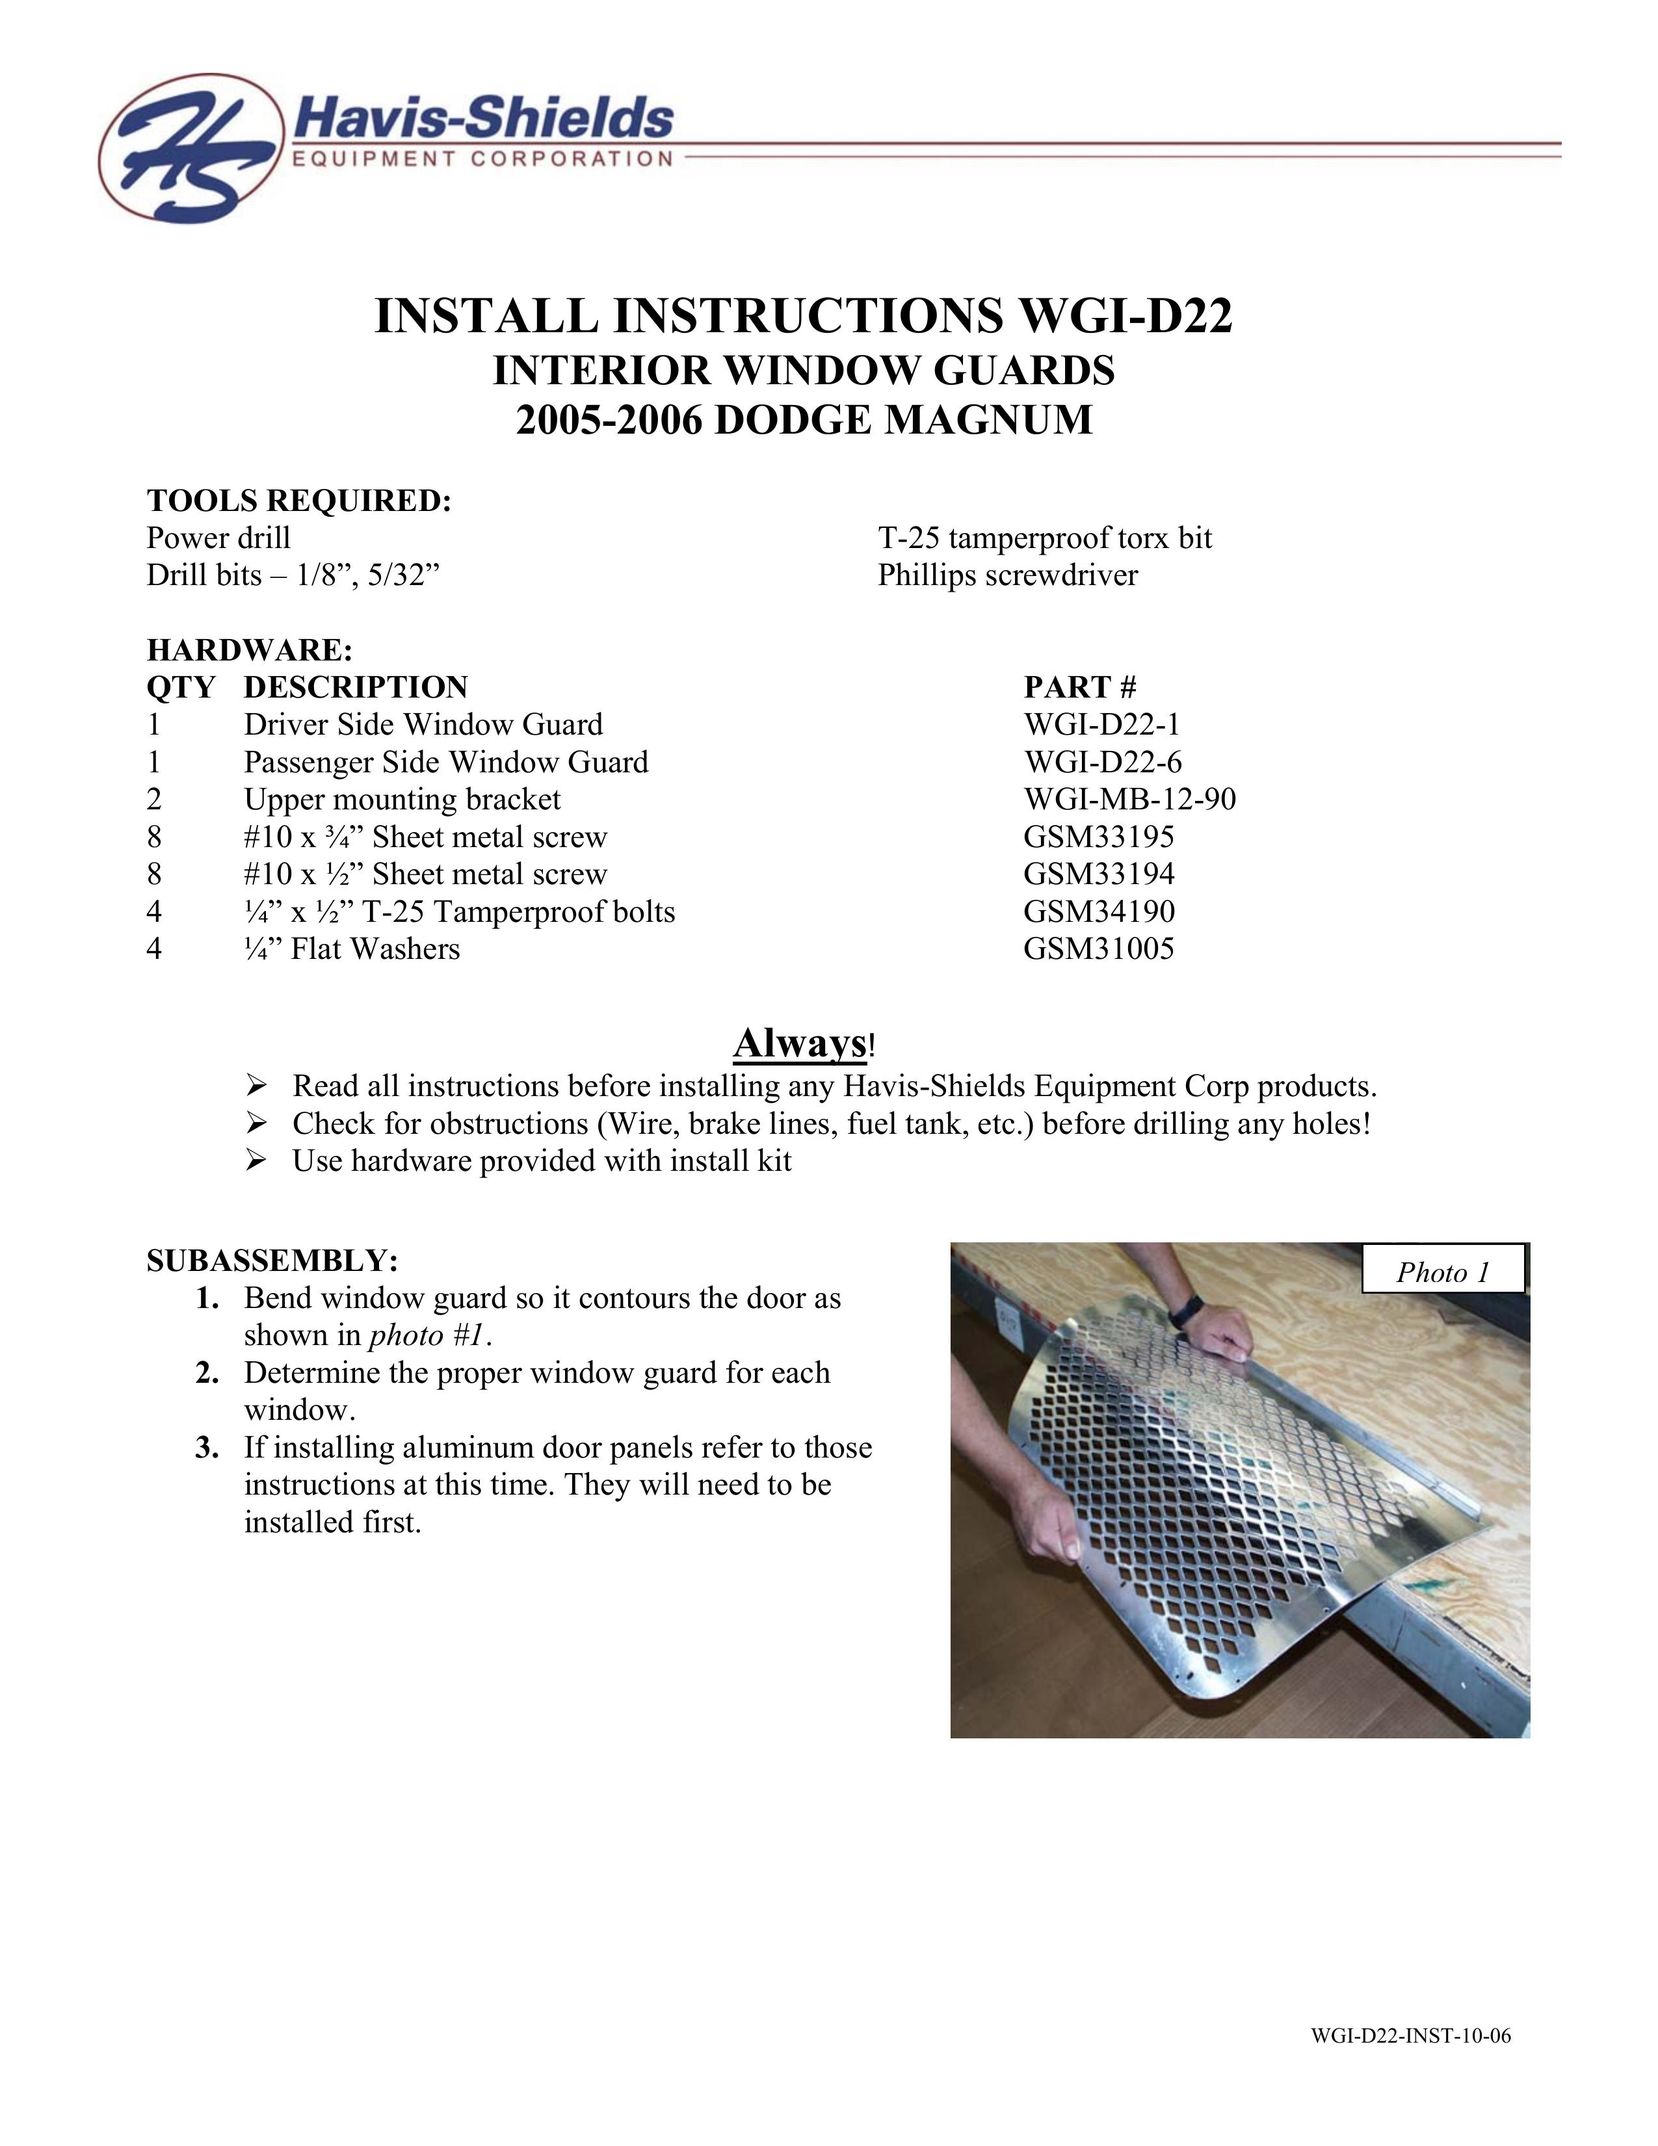 Havis-Shields WGI-D22 Window User Manual